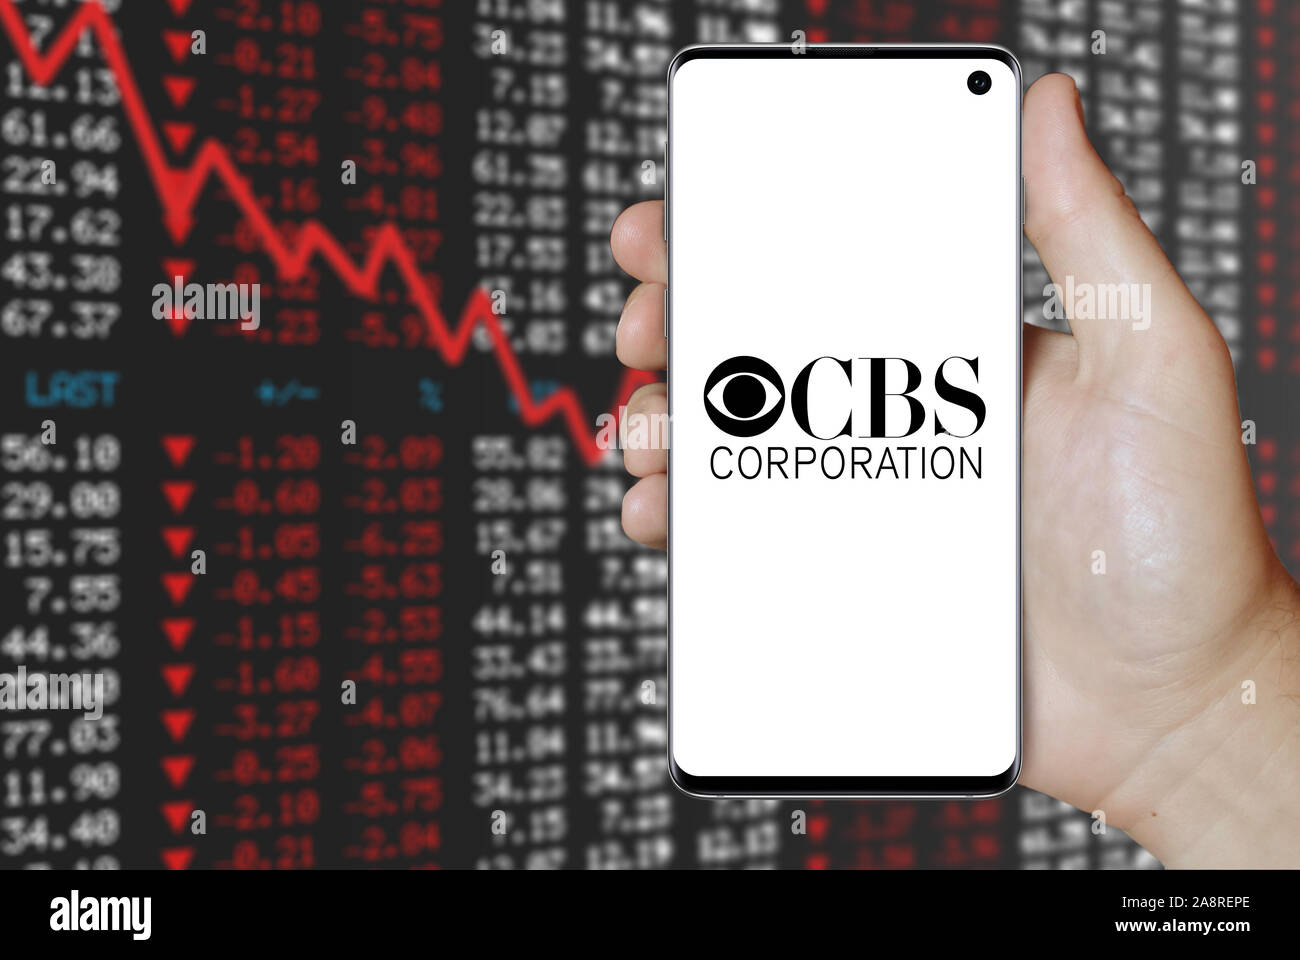 Logo der öffentlichen Unternehmen CBS Corp. auf dem Smartphone angezeigt. Negative Börse Hintergrund. Credit: PIXDUCE Stockfoto